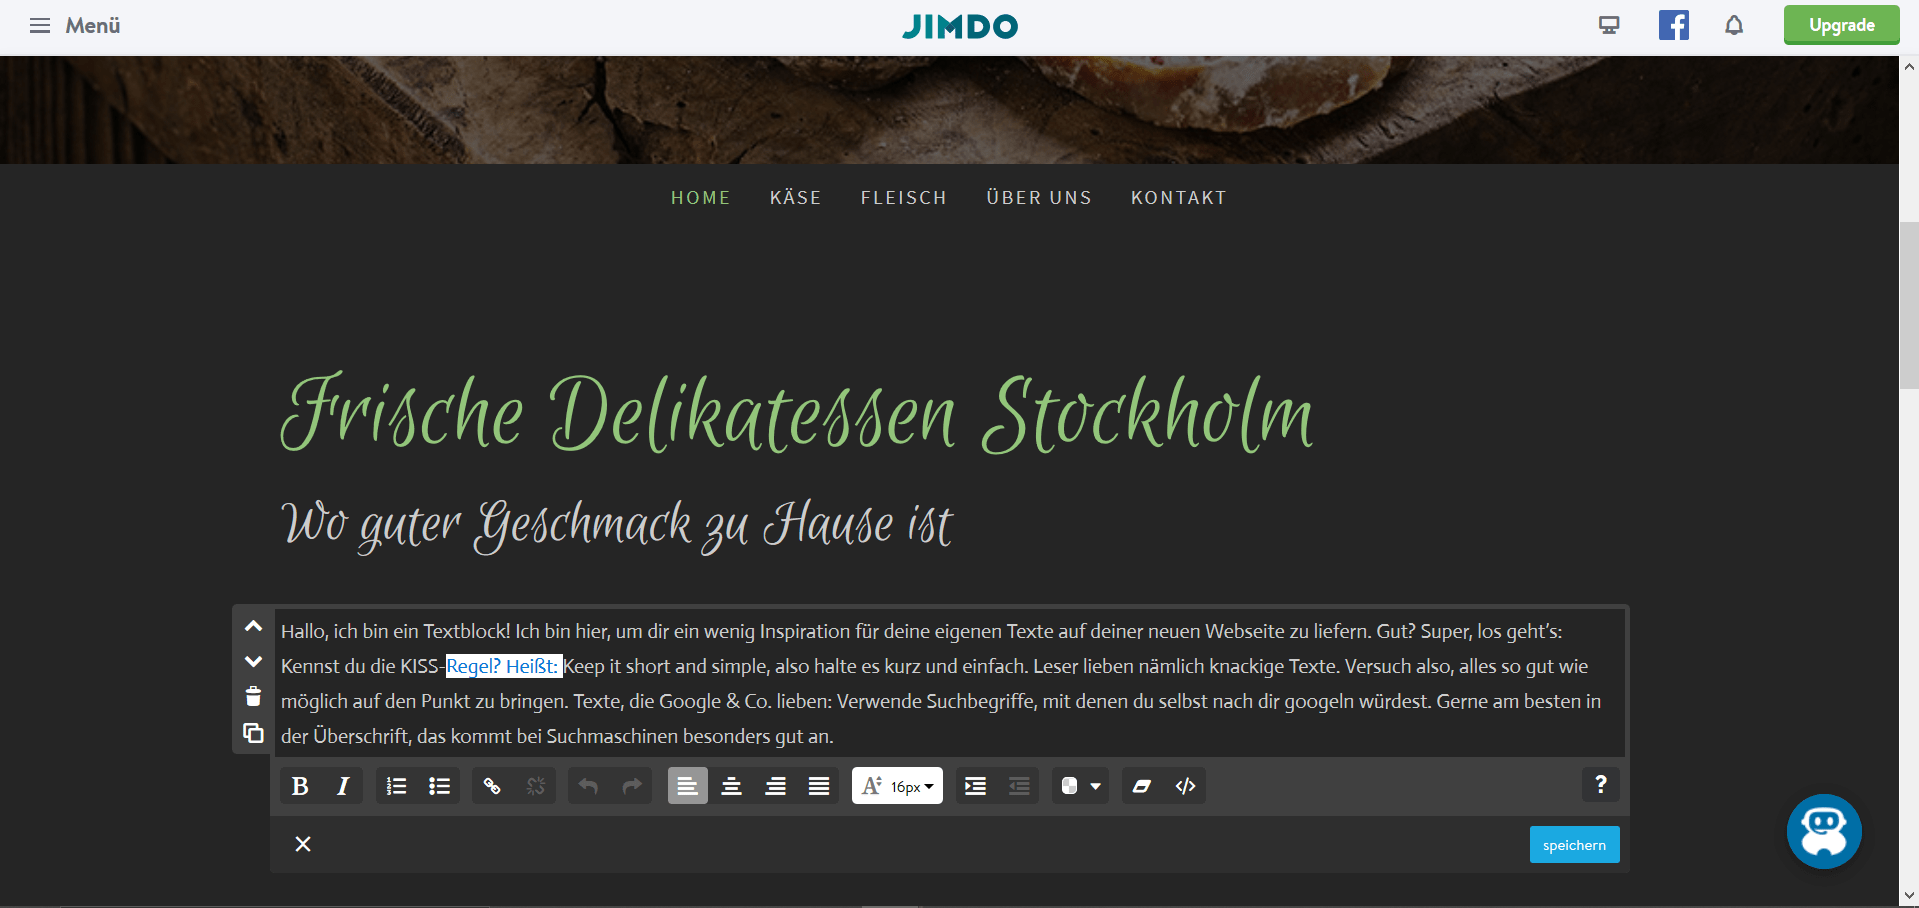 Jimdo Website Baukasten Test: Schritt 5.1